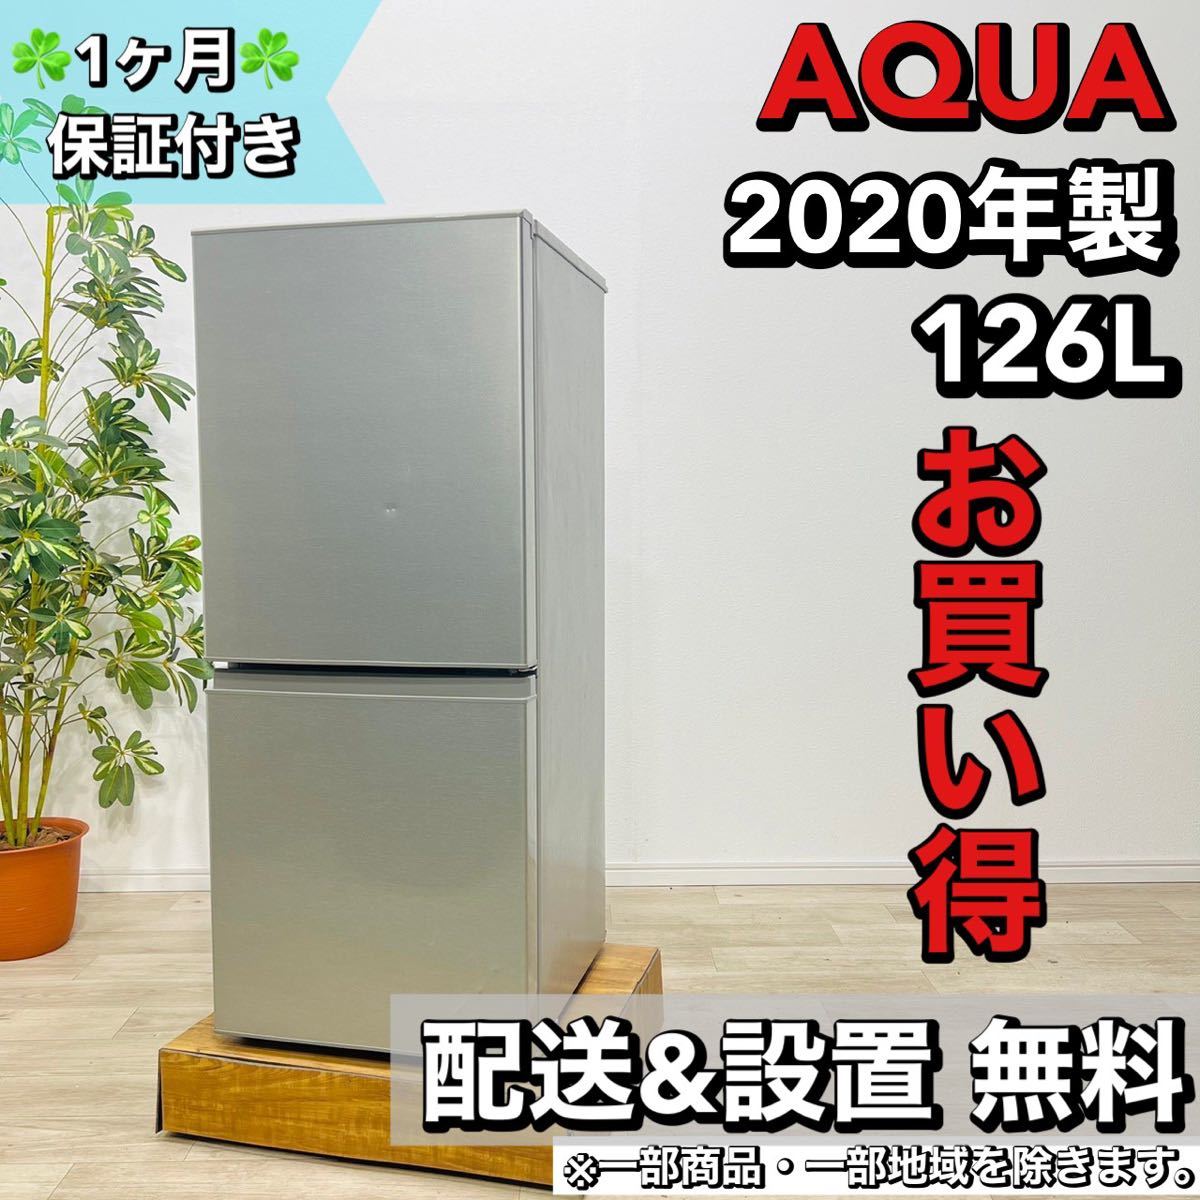 AQUA a1584 2ドア冷蔵庫 126L 2020年製 3